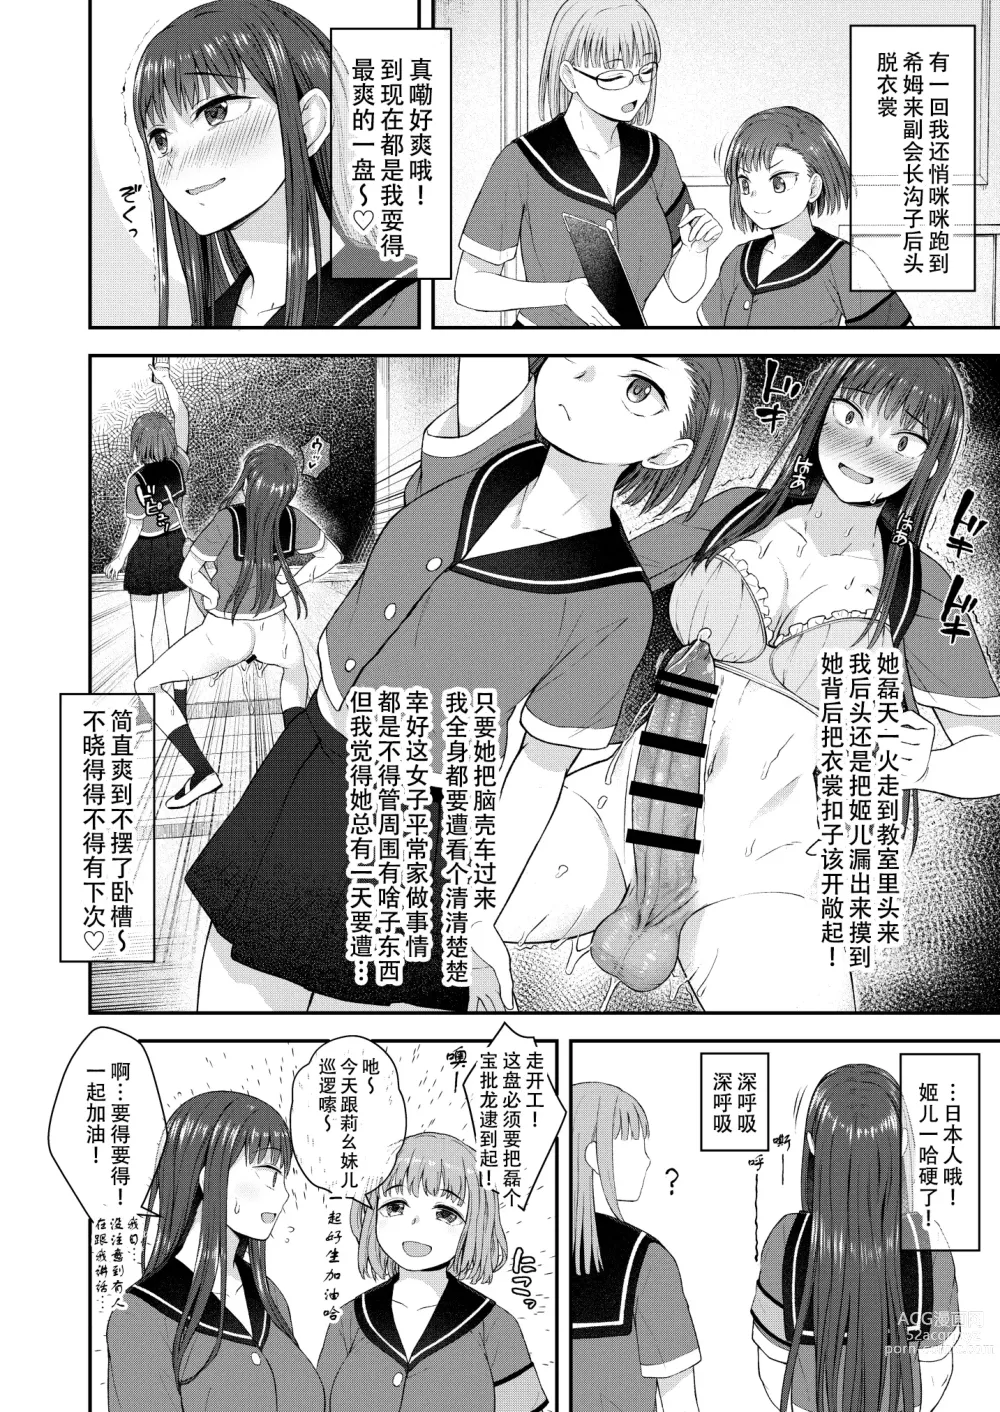 Page 5 of doujinshi Danseiki Roshutsu Jidori-han no Shoutai wa Kanojo dake ga Shitteiru.